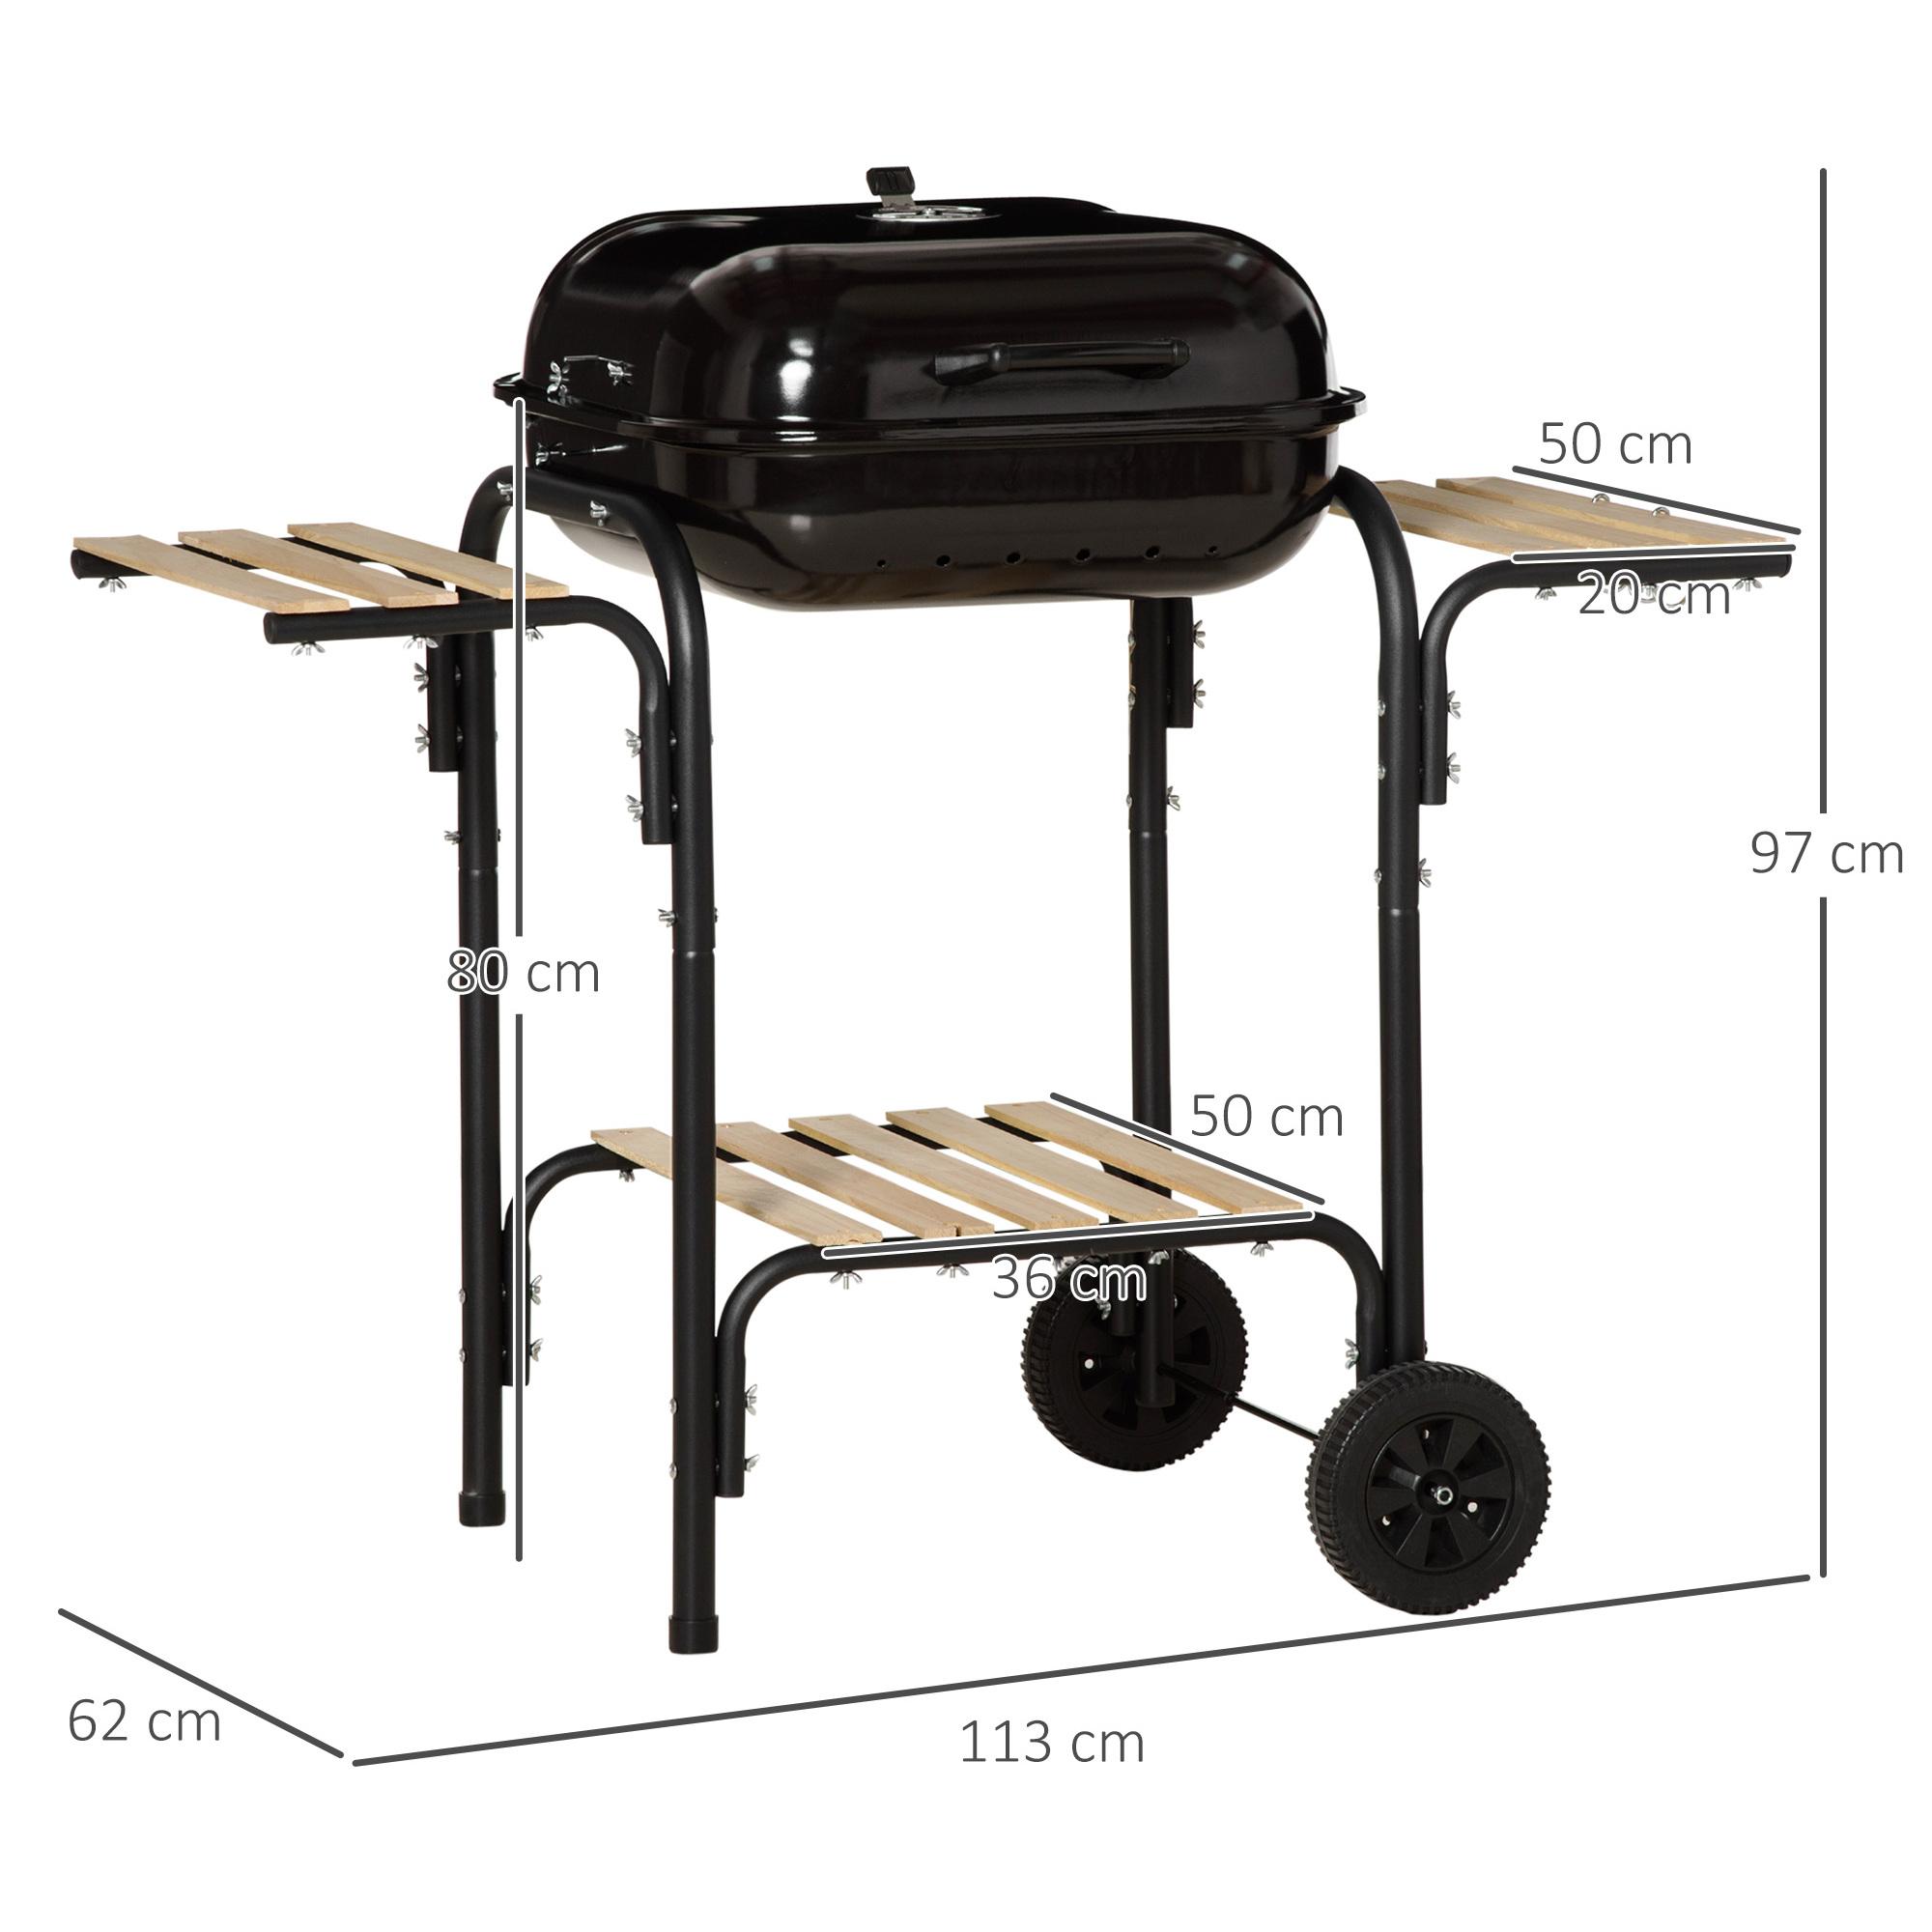 Barbecue à charbon - BBQ grill sur pied avec couvercle, roulettes - 3 étagères, 3 crochets, 3 ustensiles, 2 grilles, cuve charbon amovible - bois acier émaillé noir